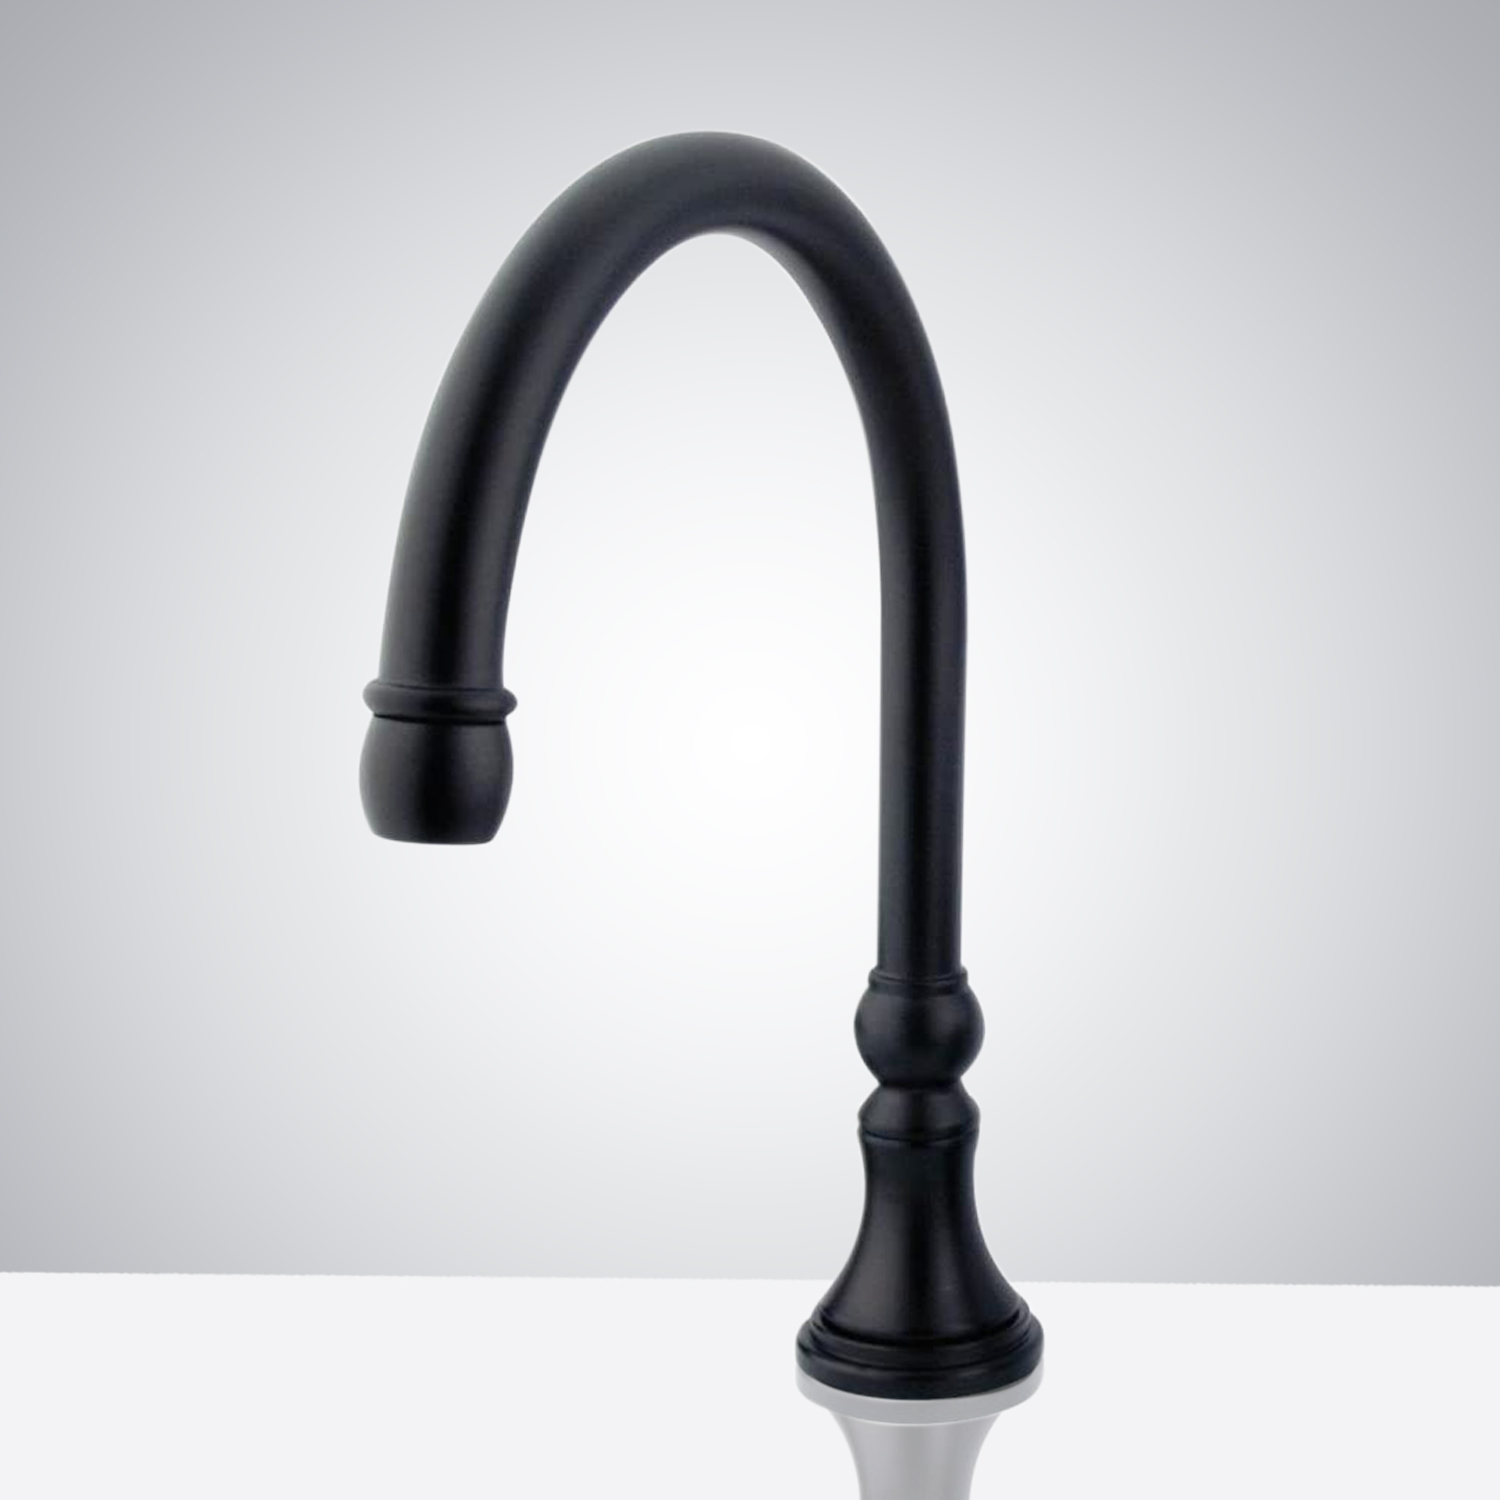 Matte Black Automatic Sensor Touchless Basin Faucet